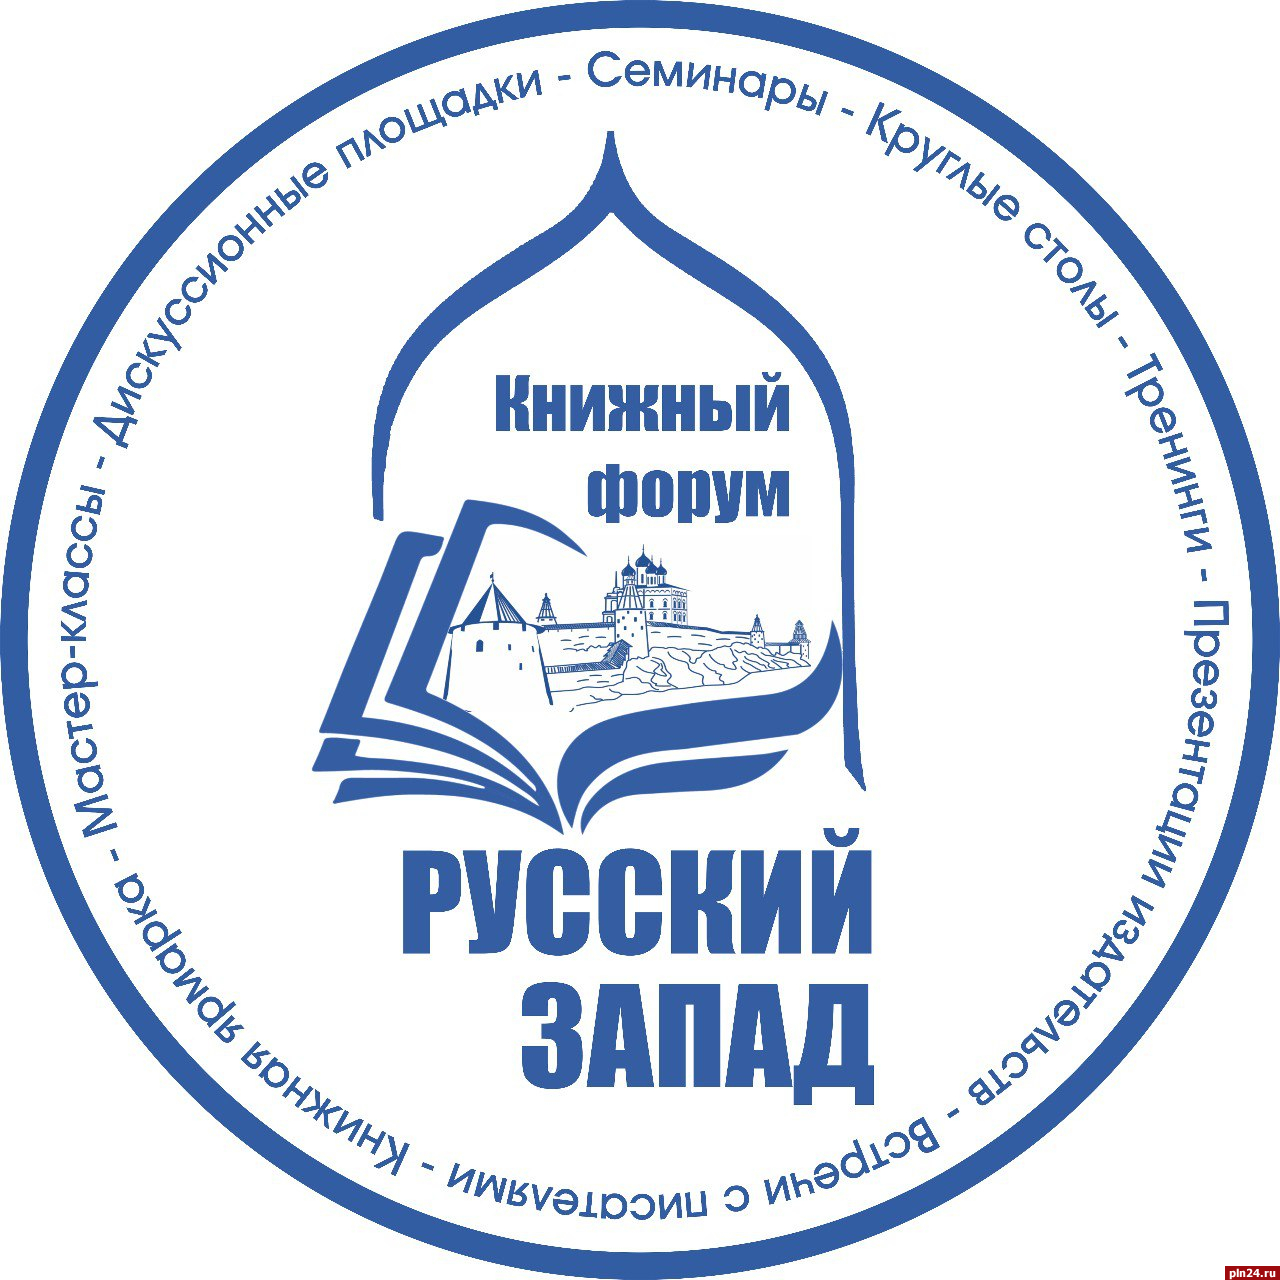 Около 30 издательств из Москвы, Петербурга и других городов будут представлены на книжном форуме в Пскове